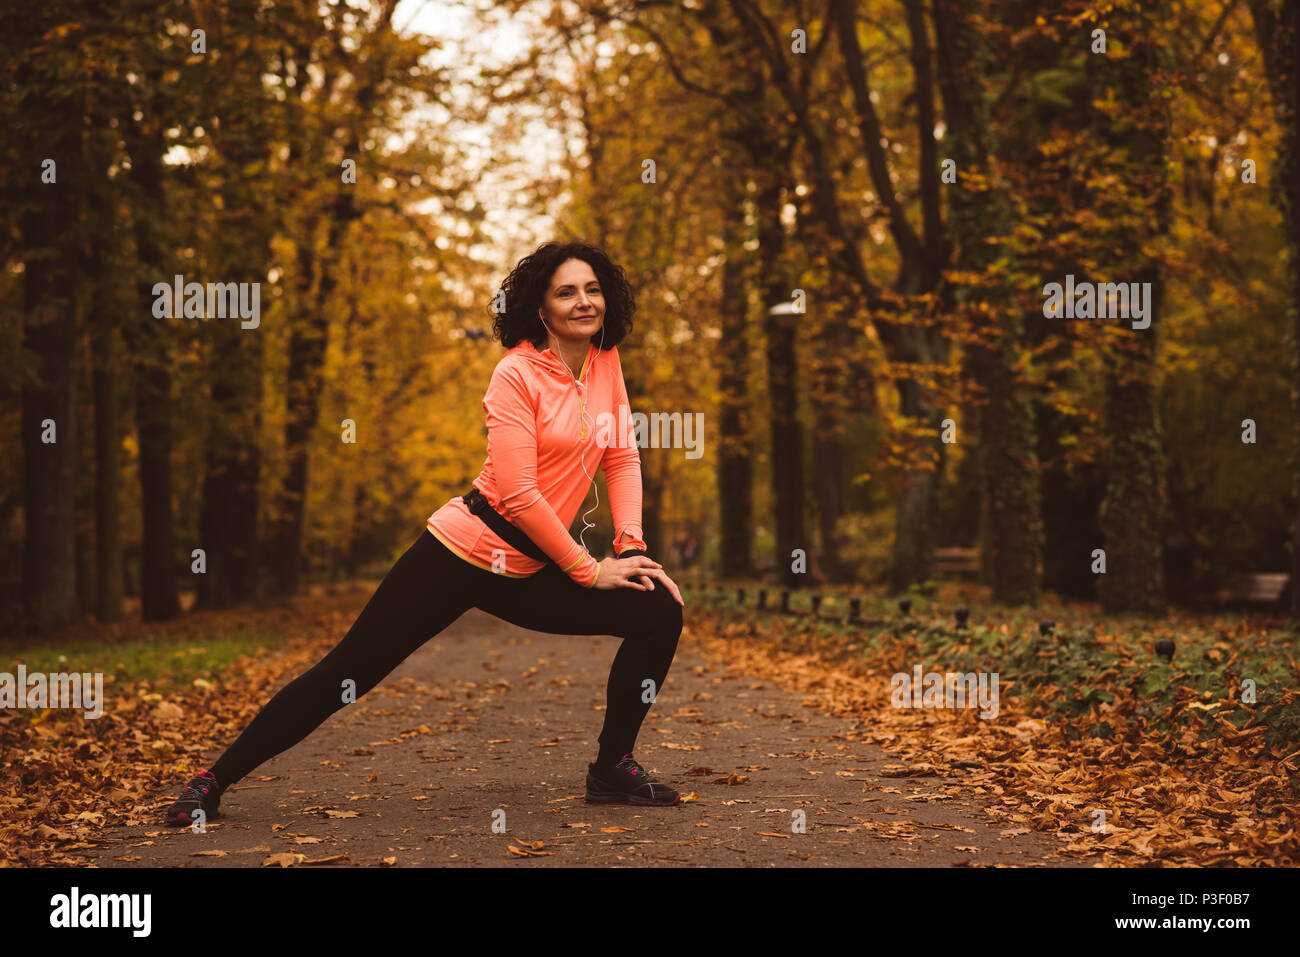 Woman performing exercice s'étendant dans la forêt Banque D'Images